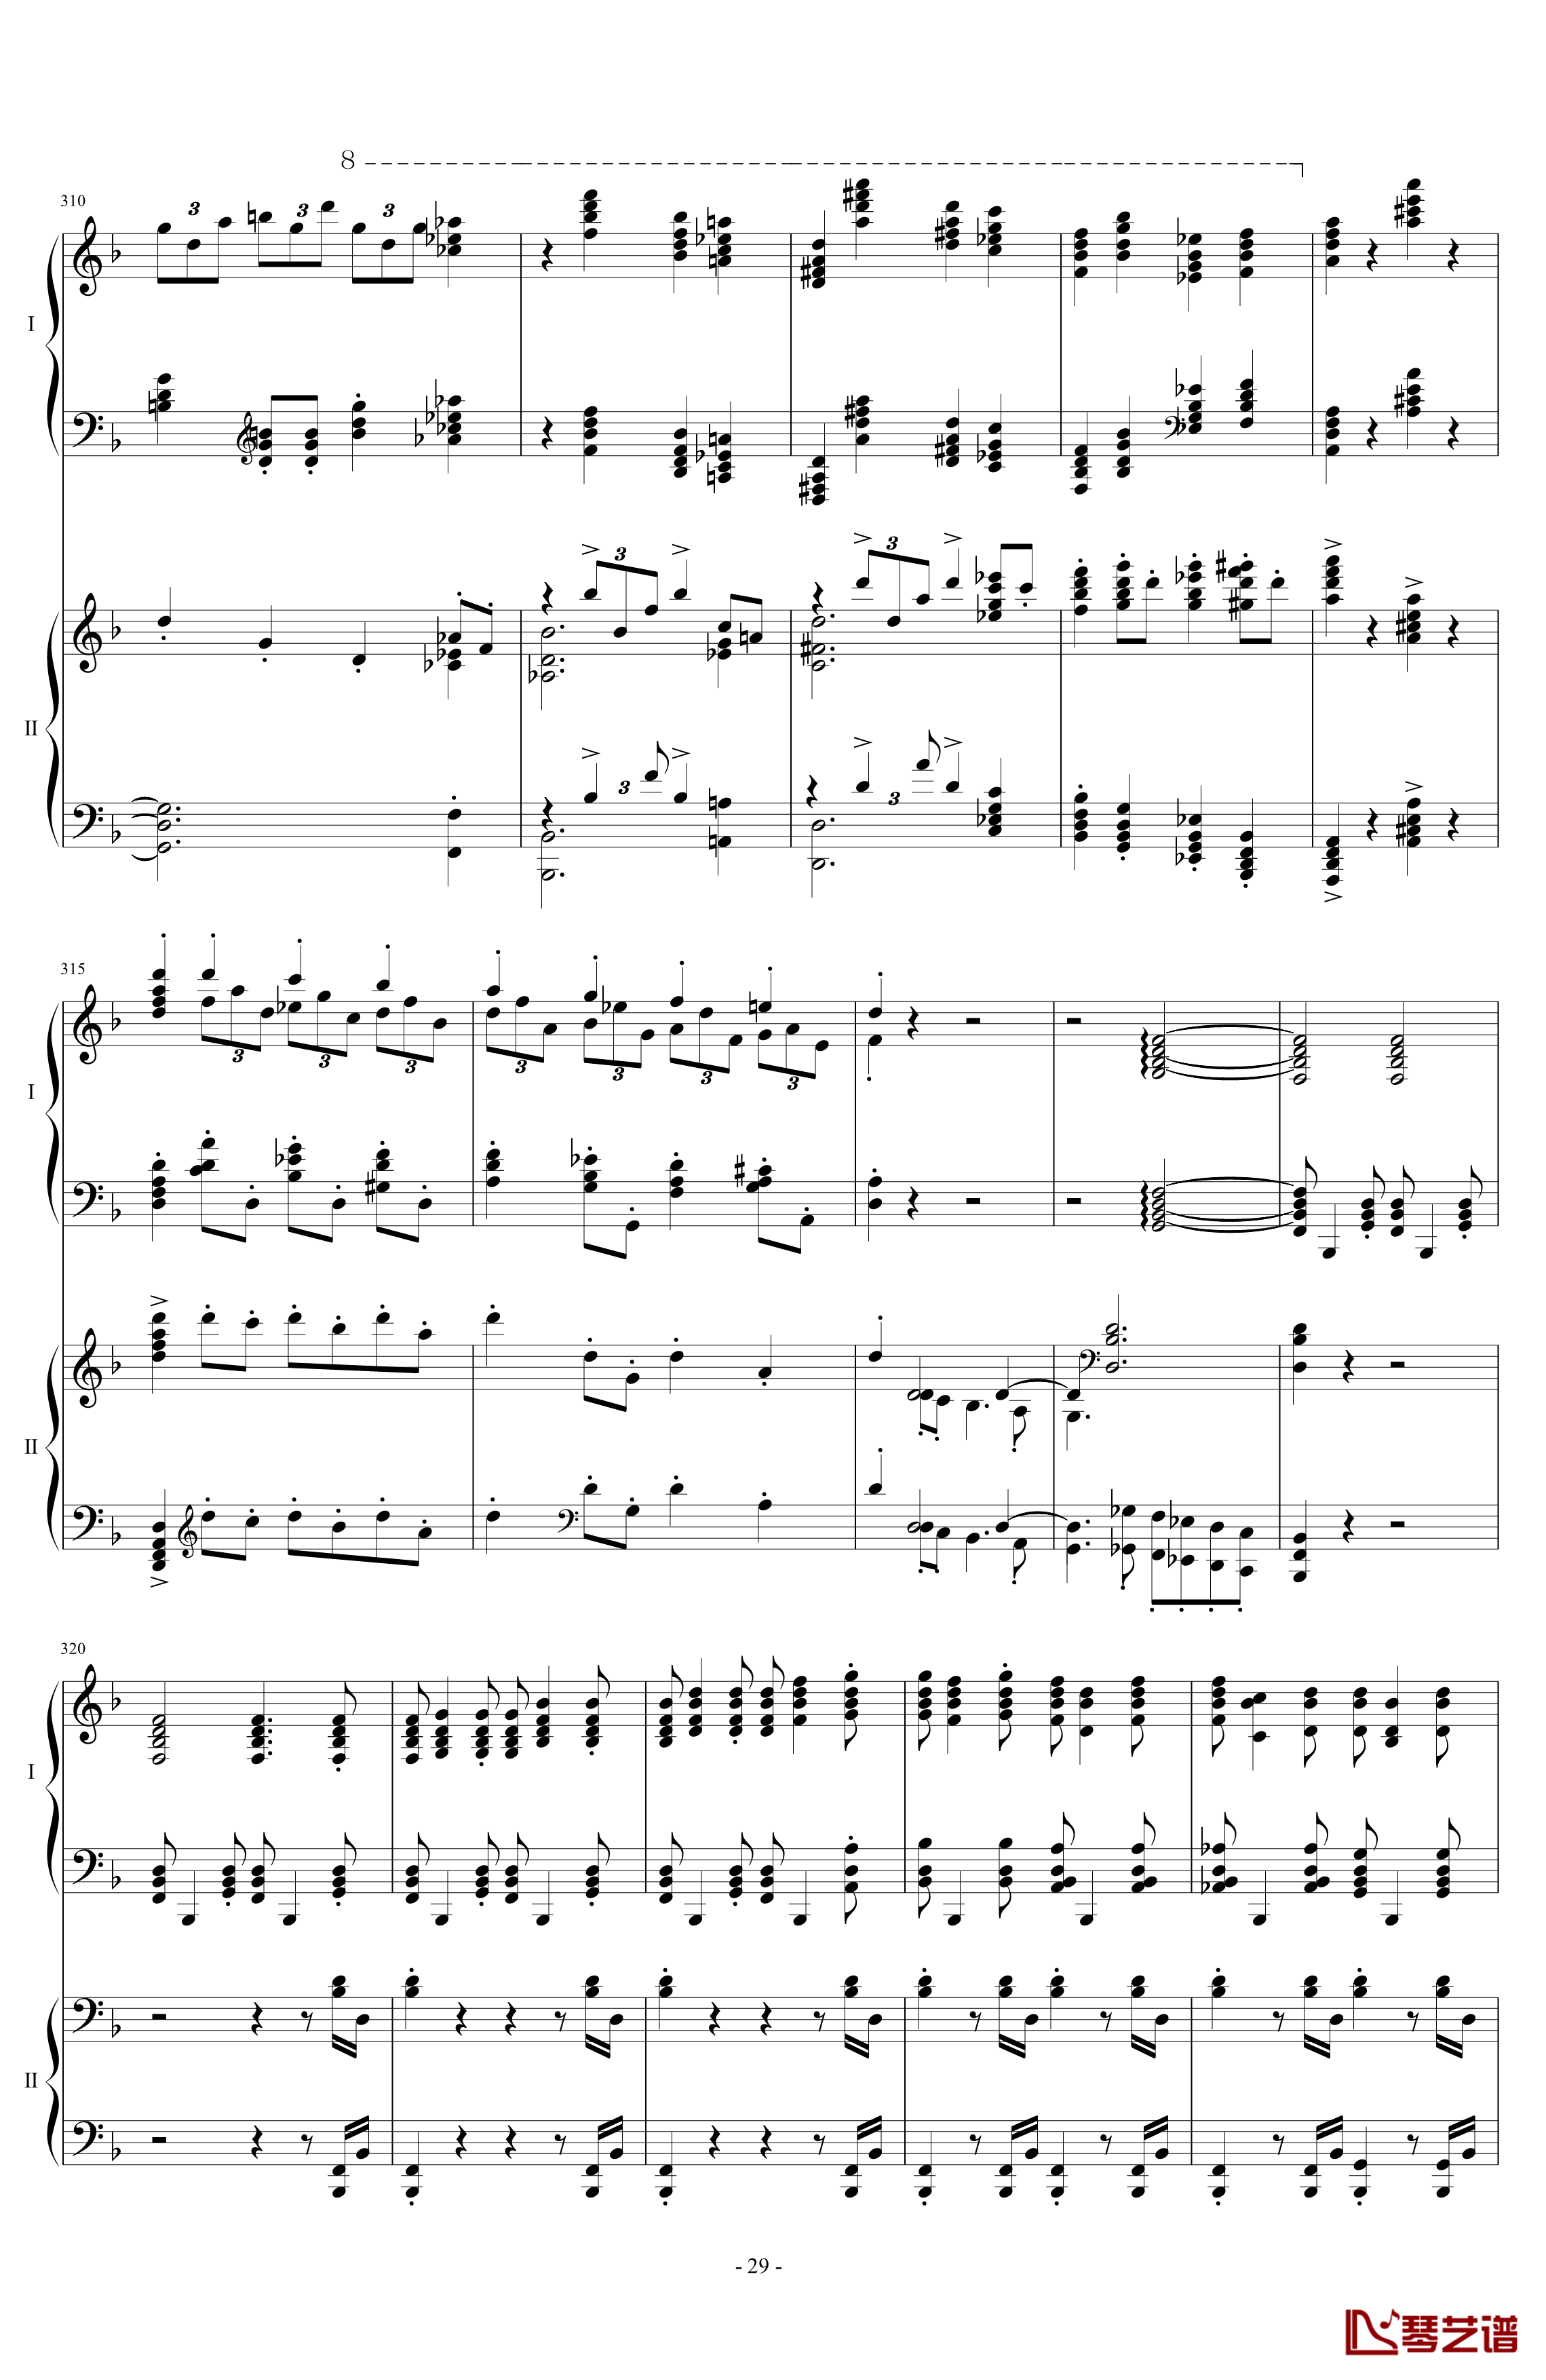 拉三第三乐章41页双钢琴钢琴谱-最难钢琴曲-拉赫马尼若夫29